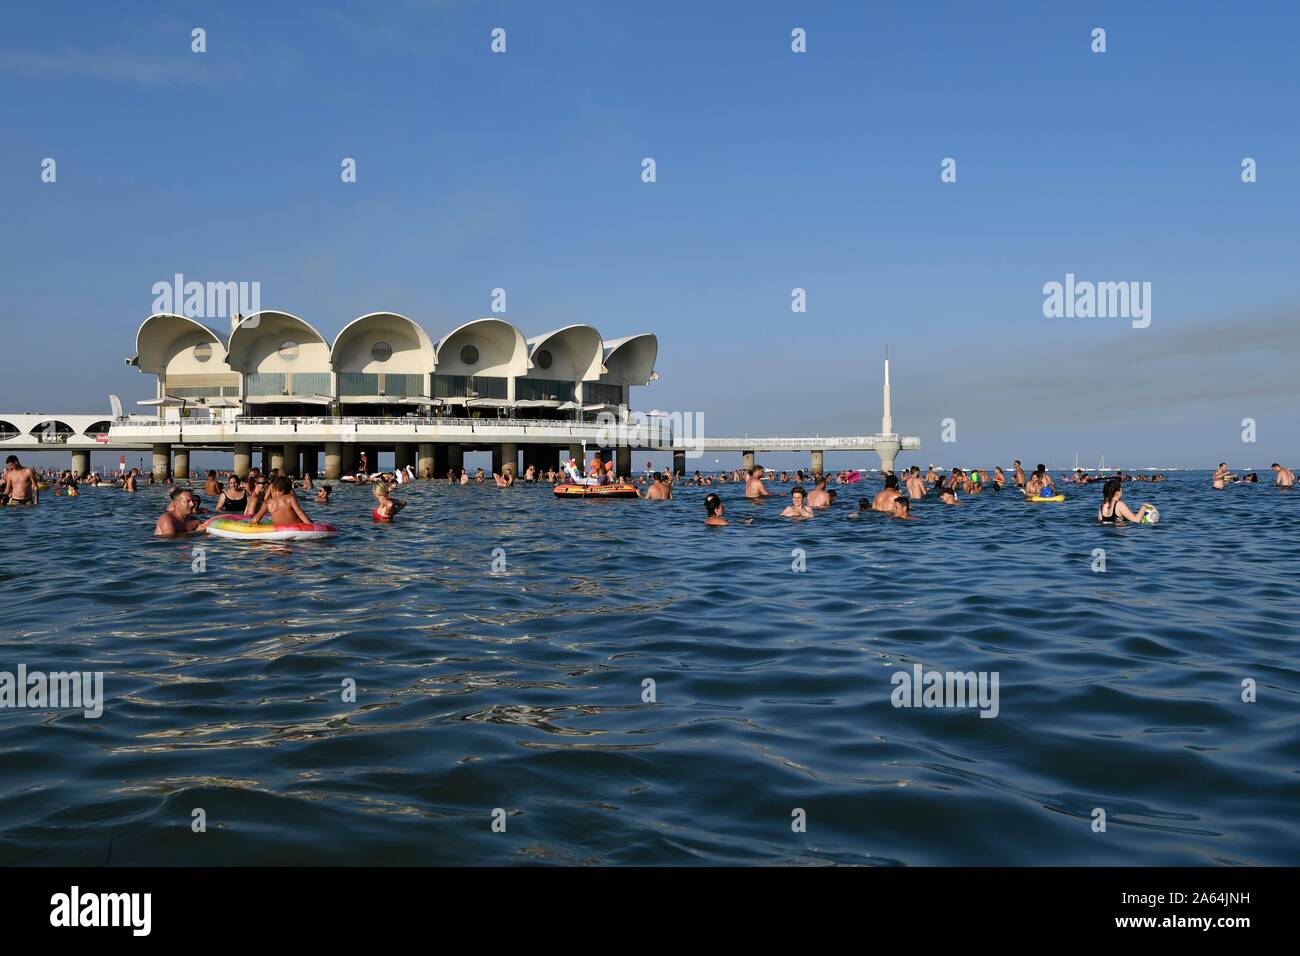 Les touristes de se baigner dans la mer, Terrazza a Mare, Lignano Sabbiadoro, mer Adriatique, Friuli Venezia Giulia, Italie Banque D'Images